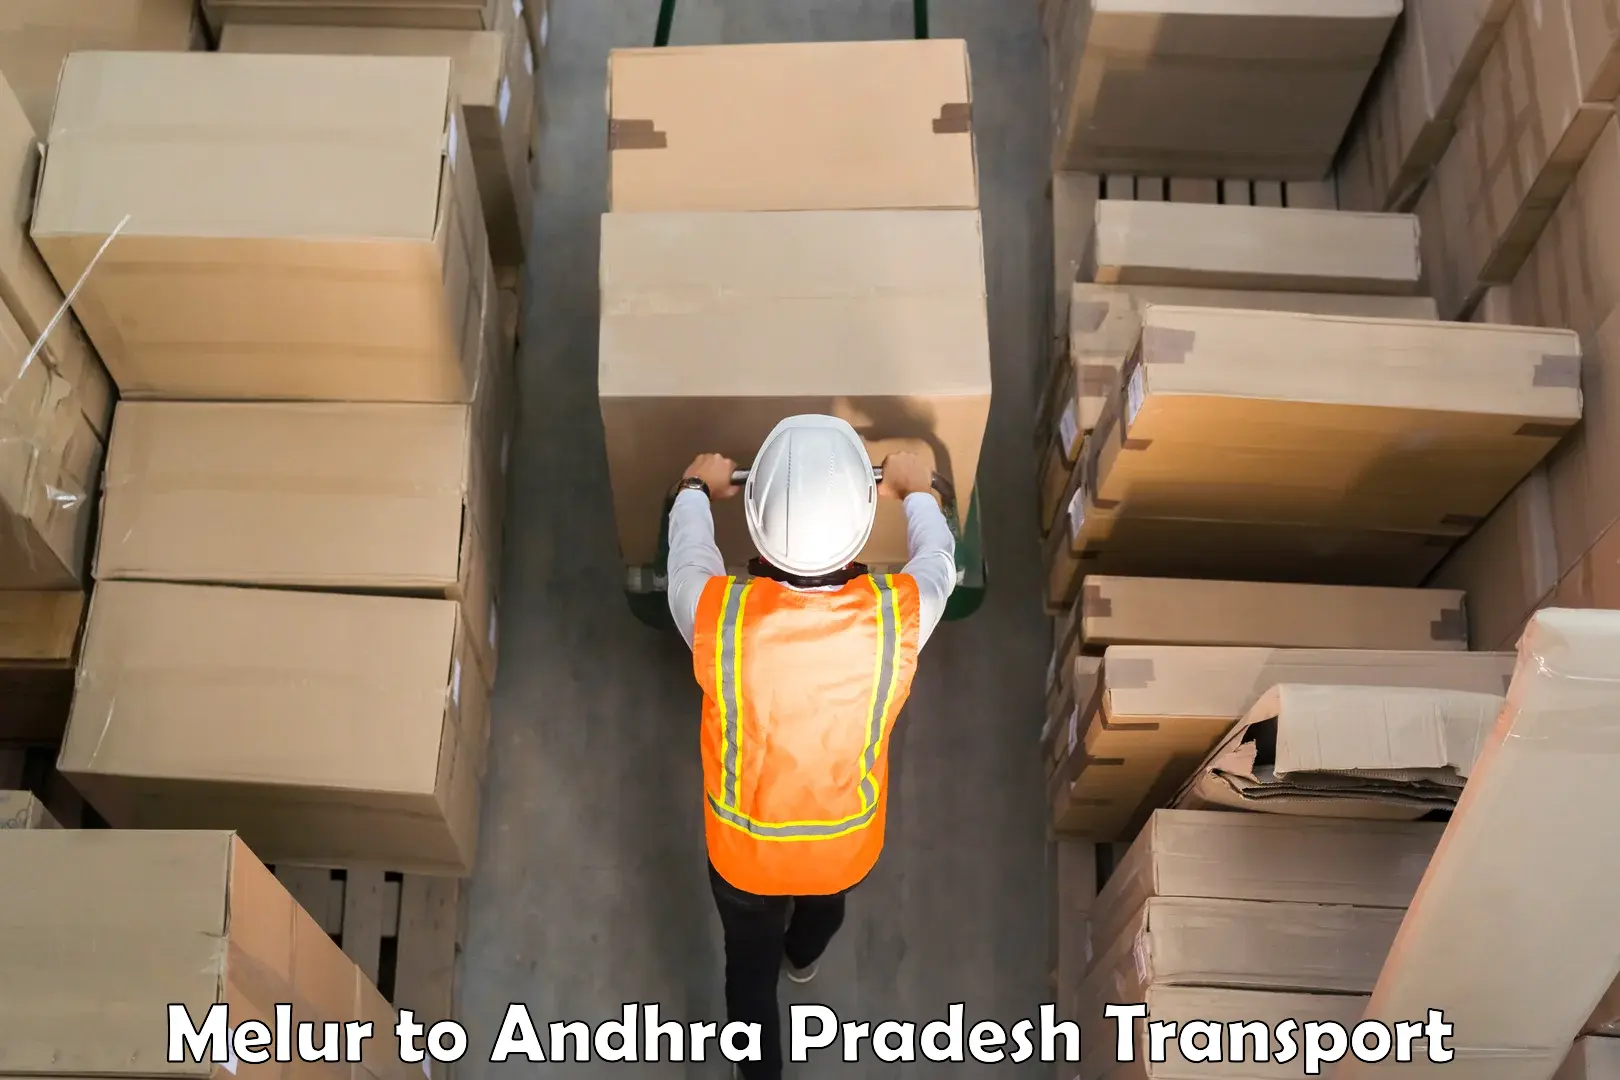 Part load transport service in India Melur to Amarapuram